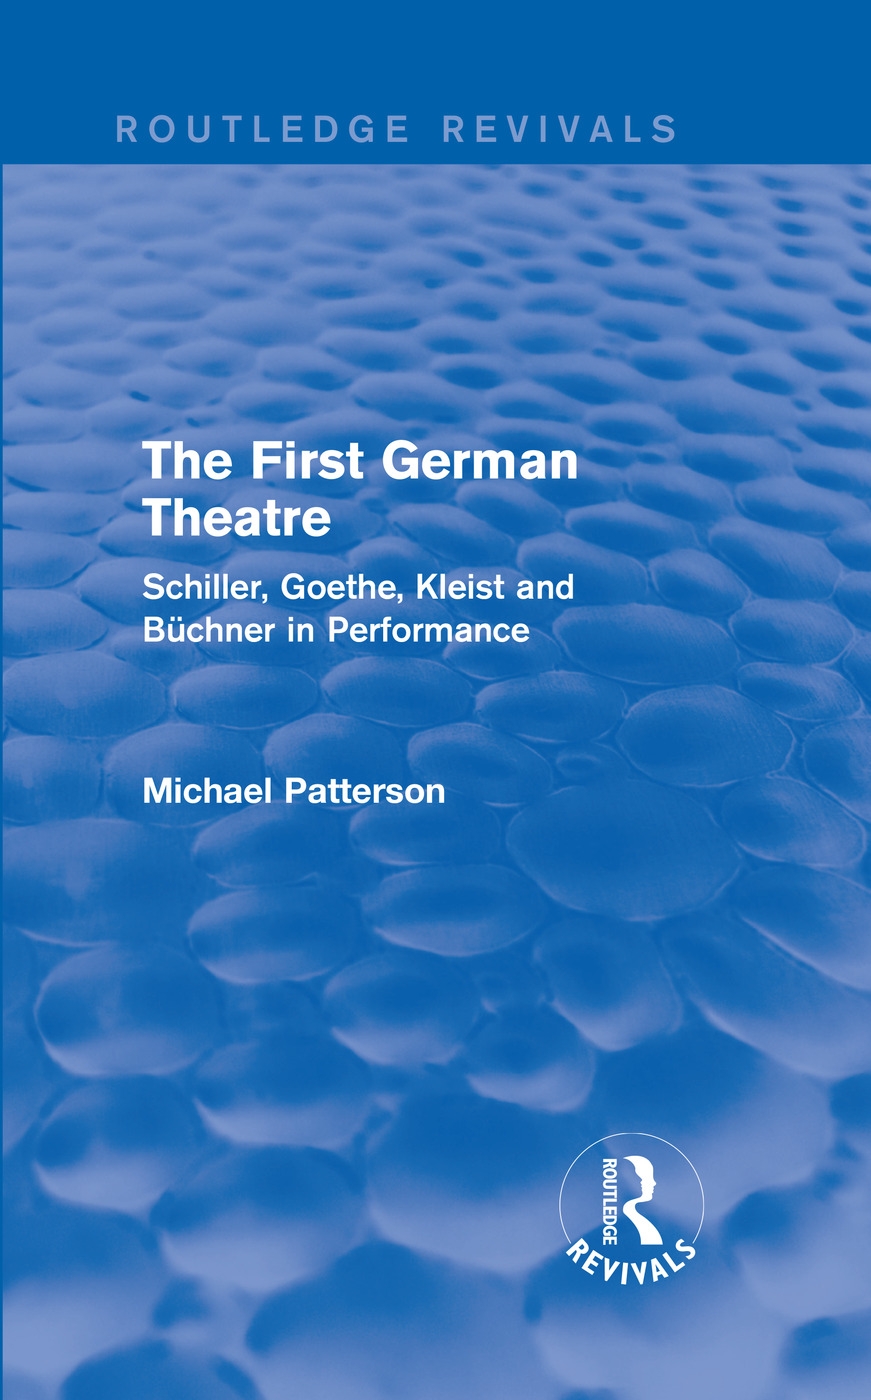 The First German Theatre: Schiller, Goethe, Kleist and Buchner in Performance